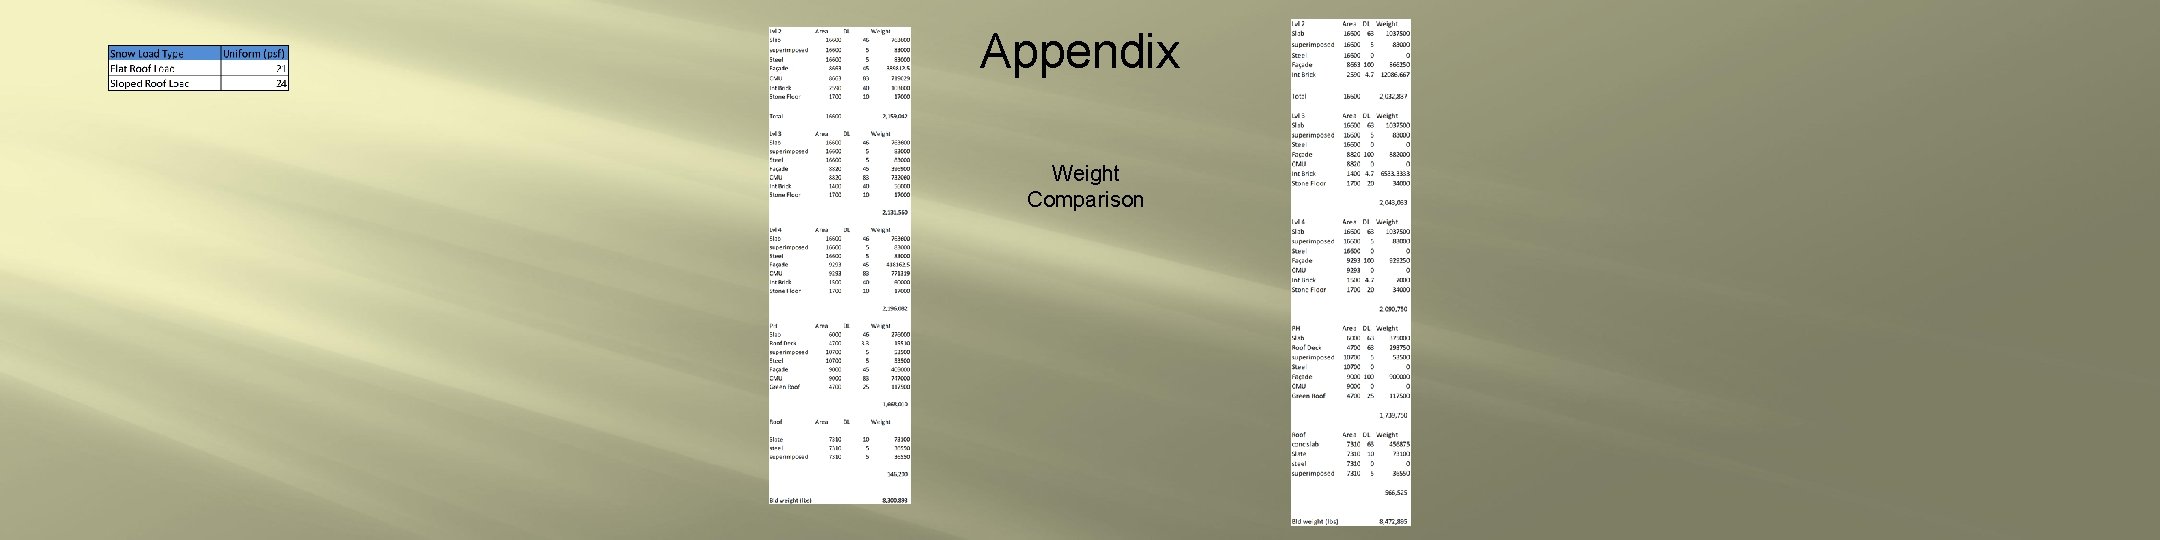 Appendix Weight Comparison 